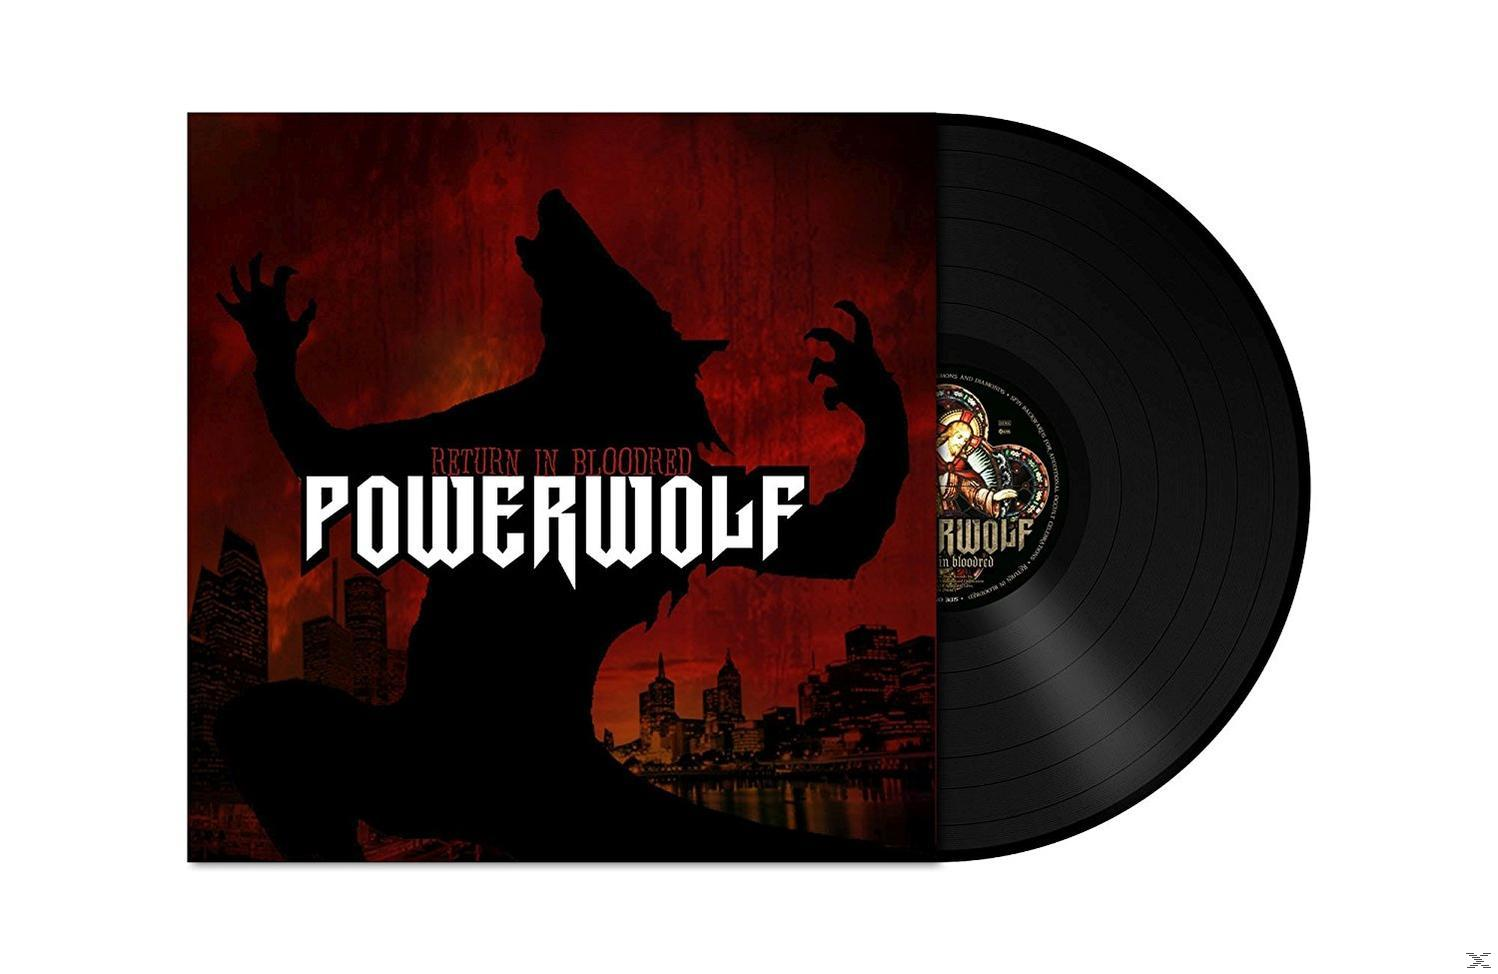 Powerwolf - Return In - Bloodred (Vinyl)